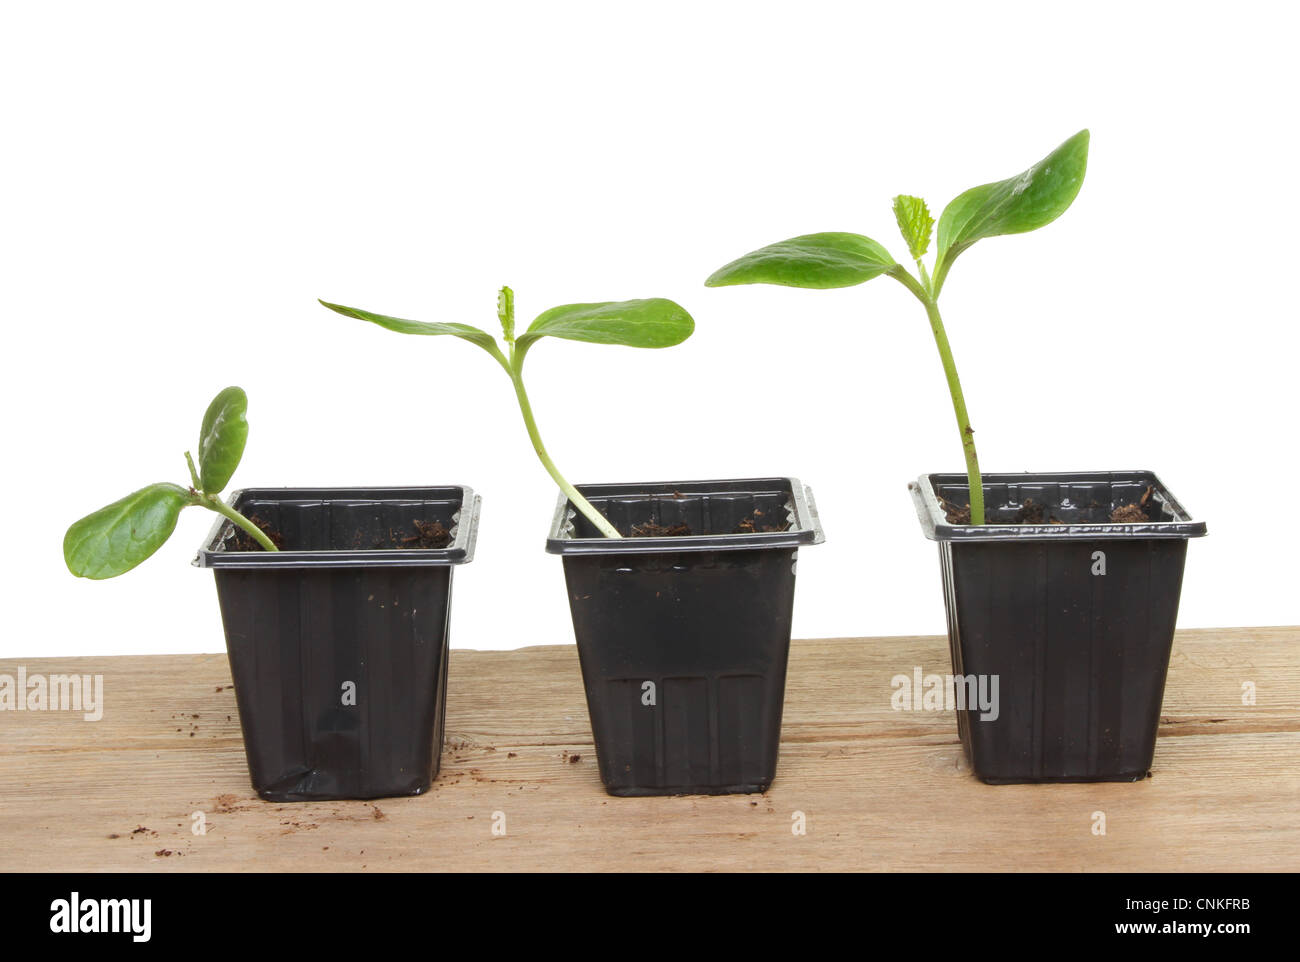 Drei Zucchini Gemüsepflanze Sämlinge auf einem Holzbrett in der Größe aufsteigend von links nach rechts Stockfoto